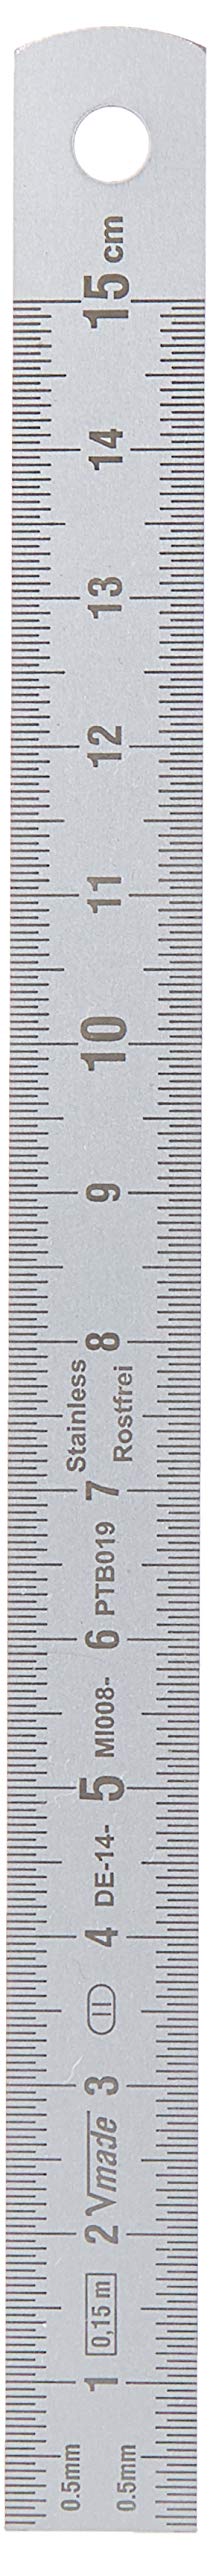 Edelstahl-Lineal, 150 x 13 x 0,5 mm, Unterteilung auf beiden Seiten